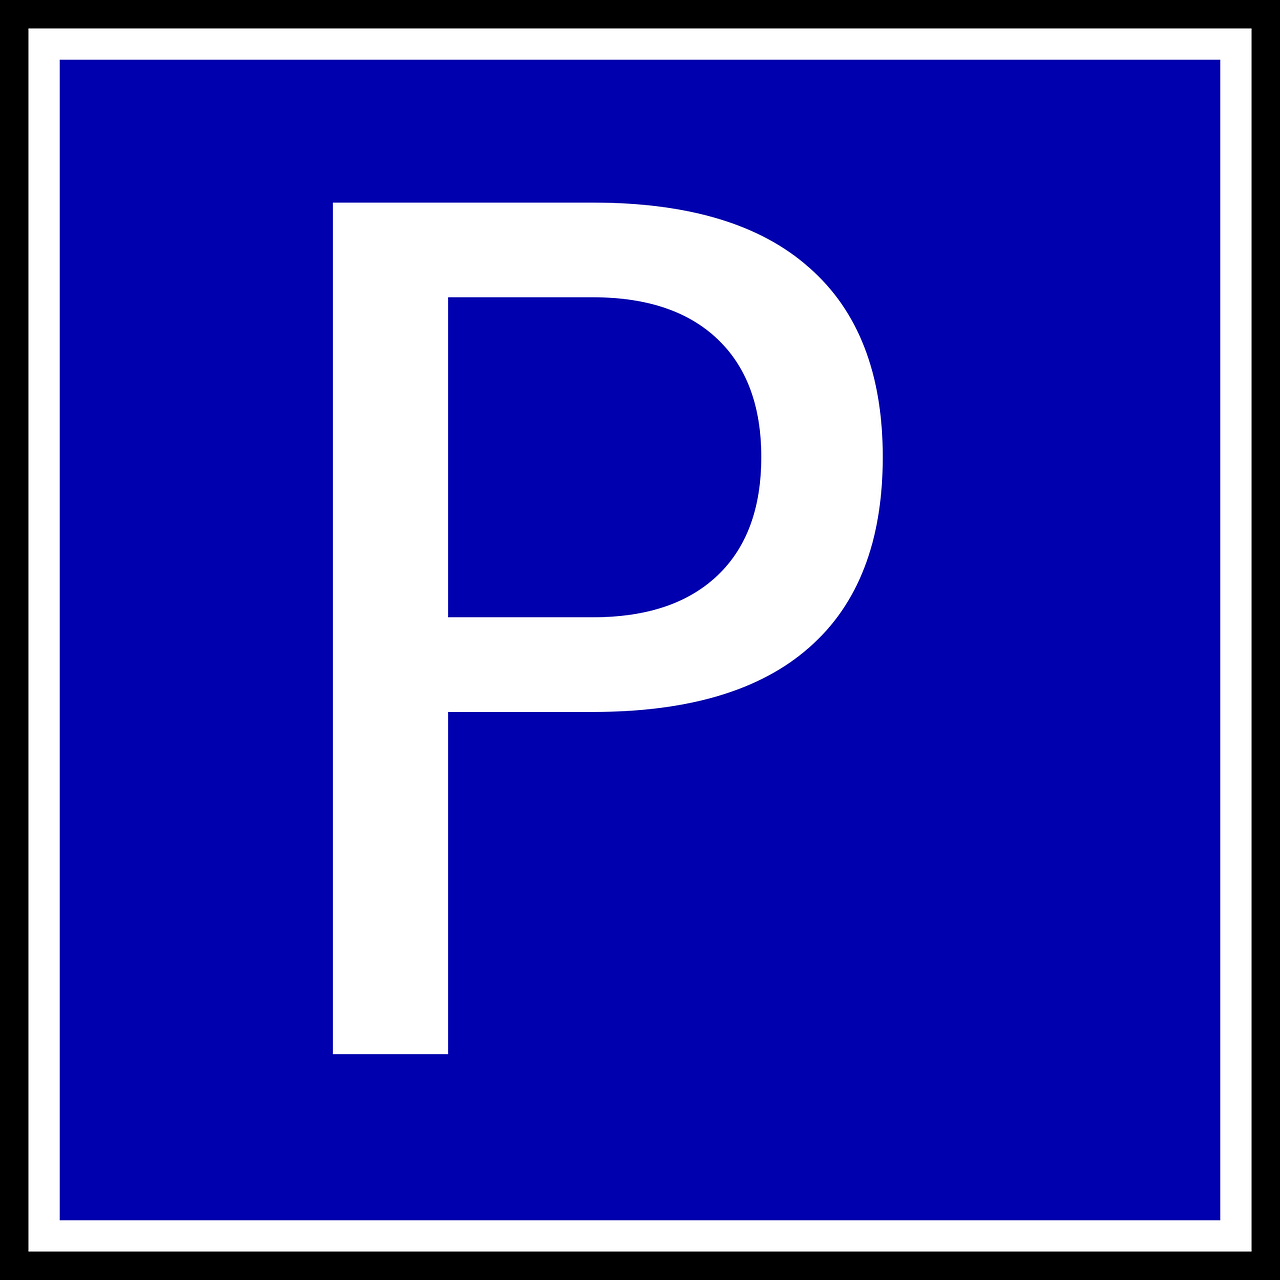 parking lot logo free photo